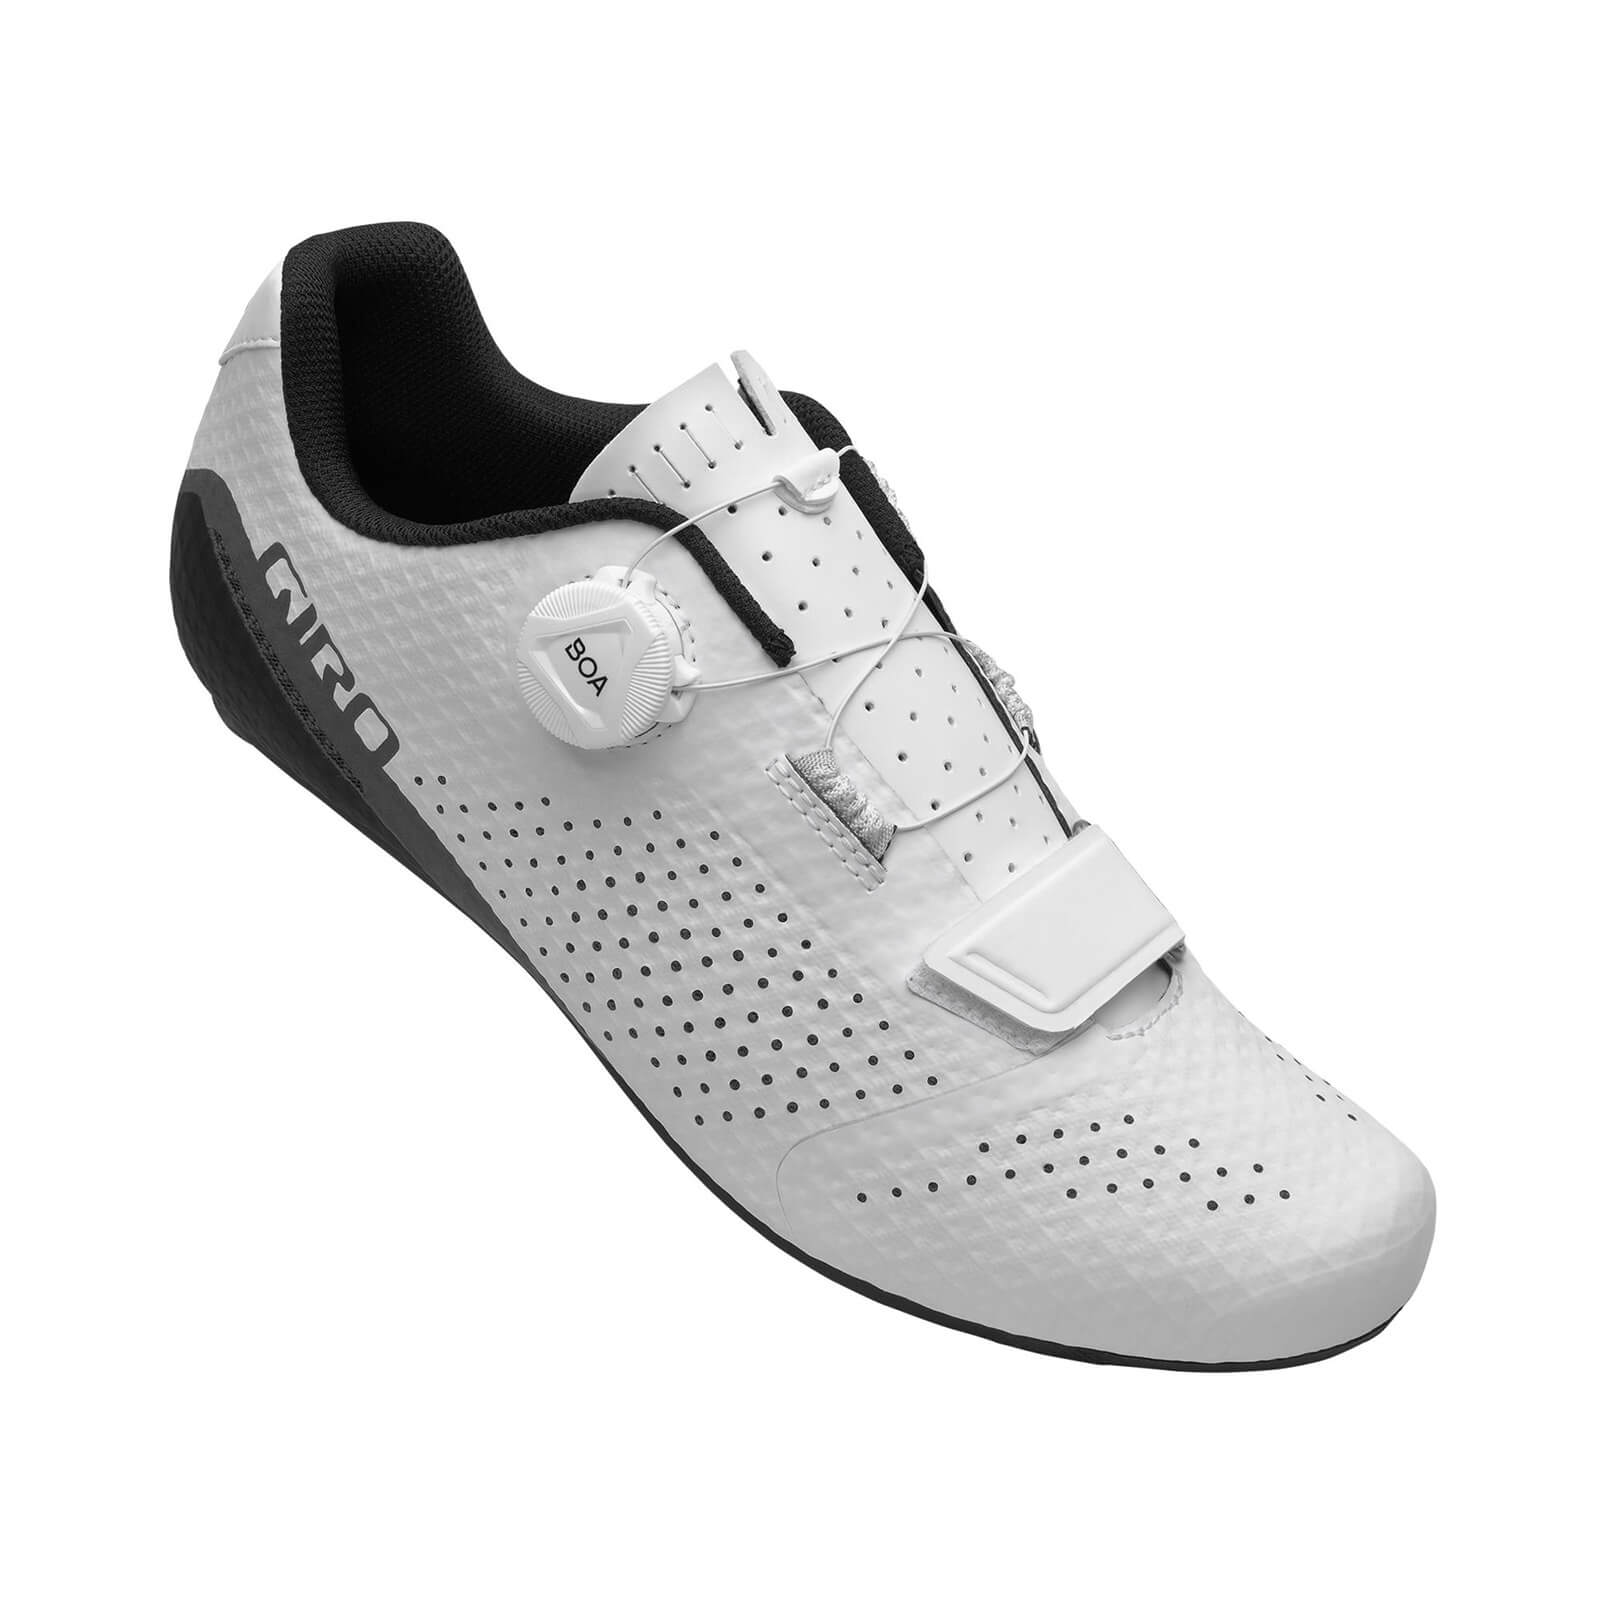 Giro Cadet Road Shoes - EU 44 - White